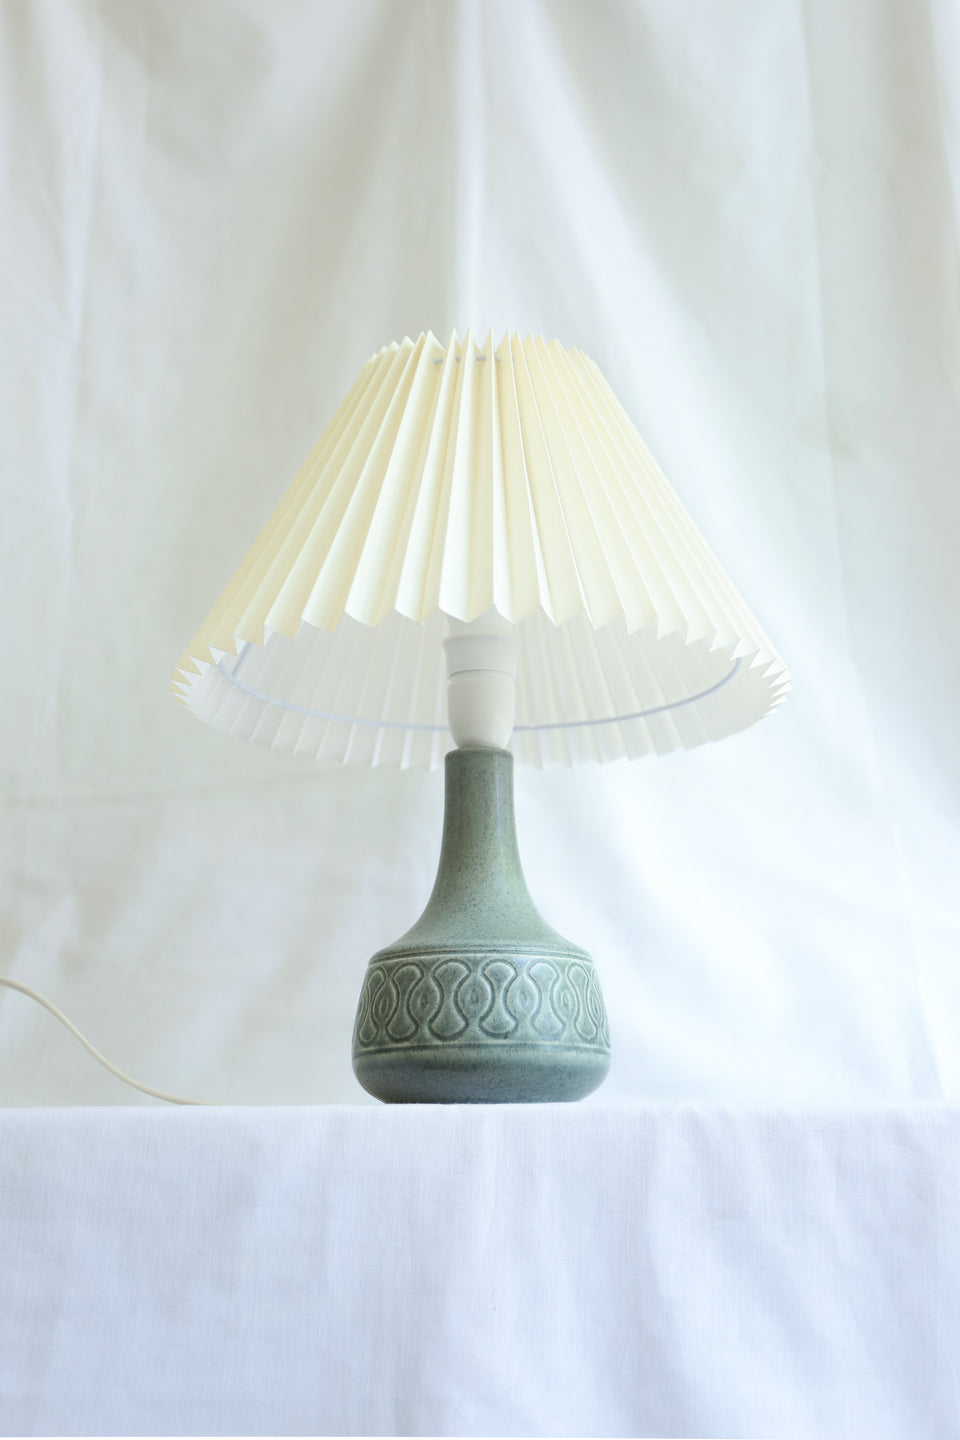 Danish Vintage Søholm Table Lamp Model 2113-2/デンマークヴィンテージ スーホルム テーブルランプ 北欧インテリア